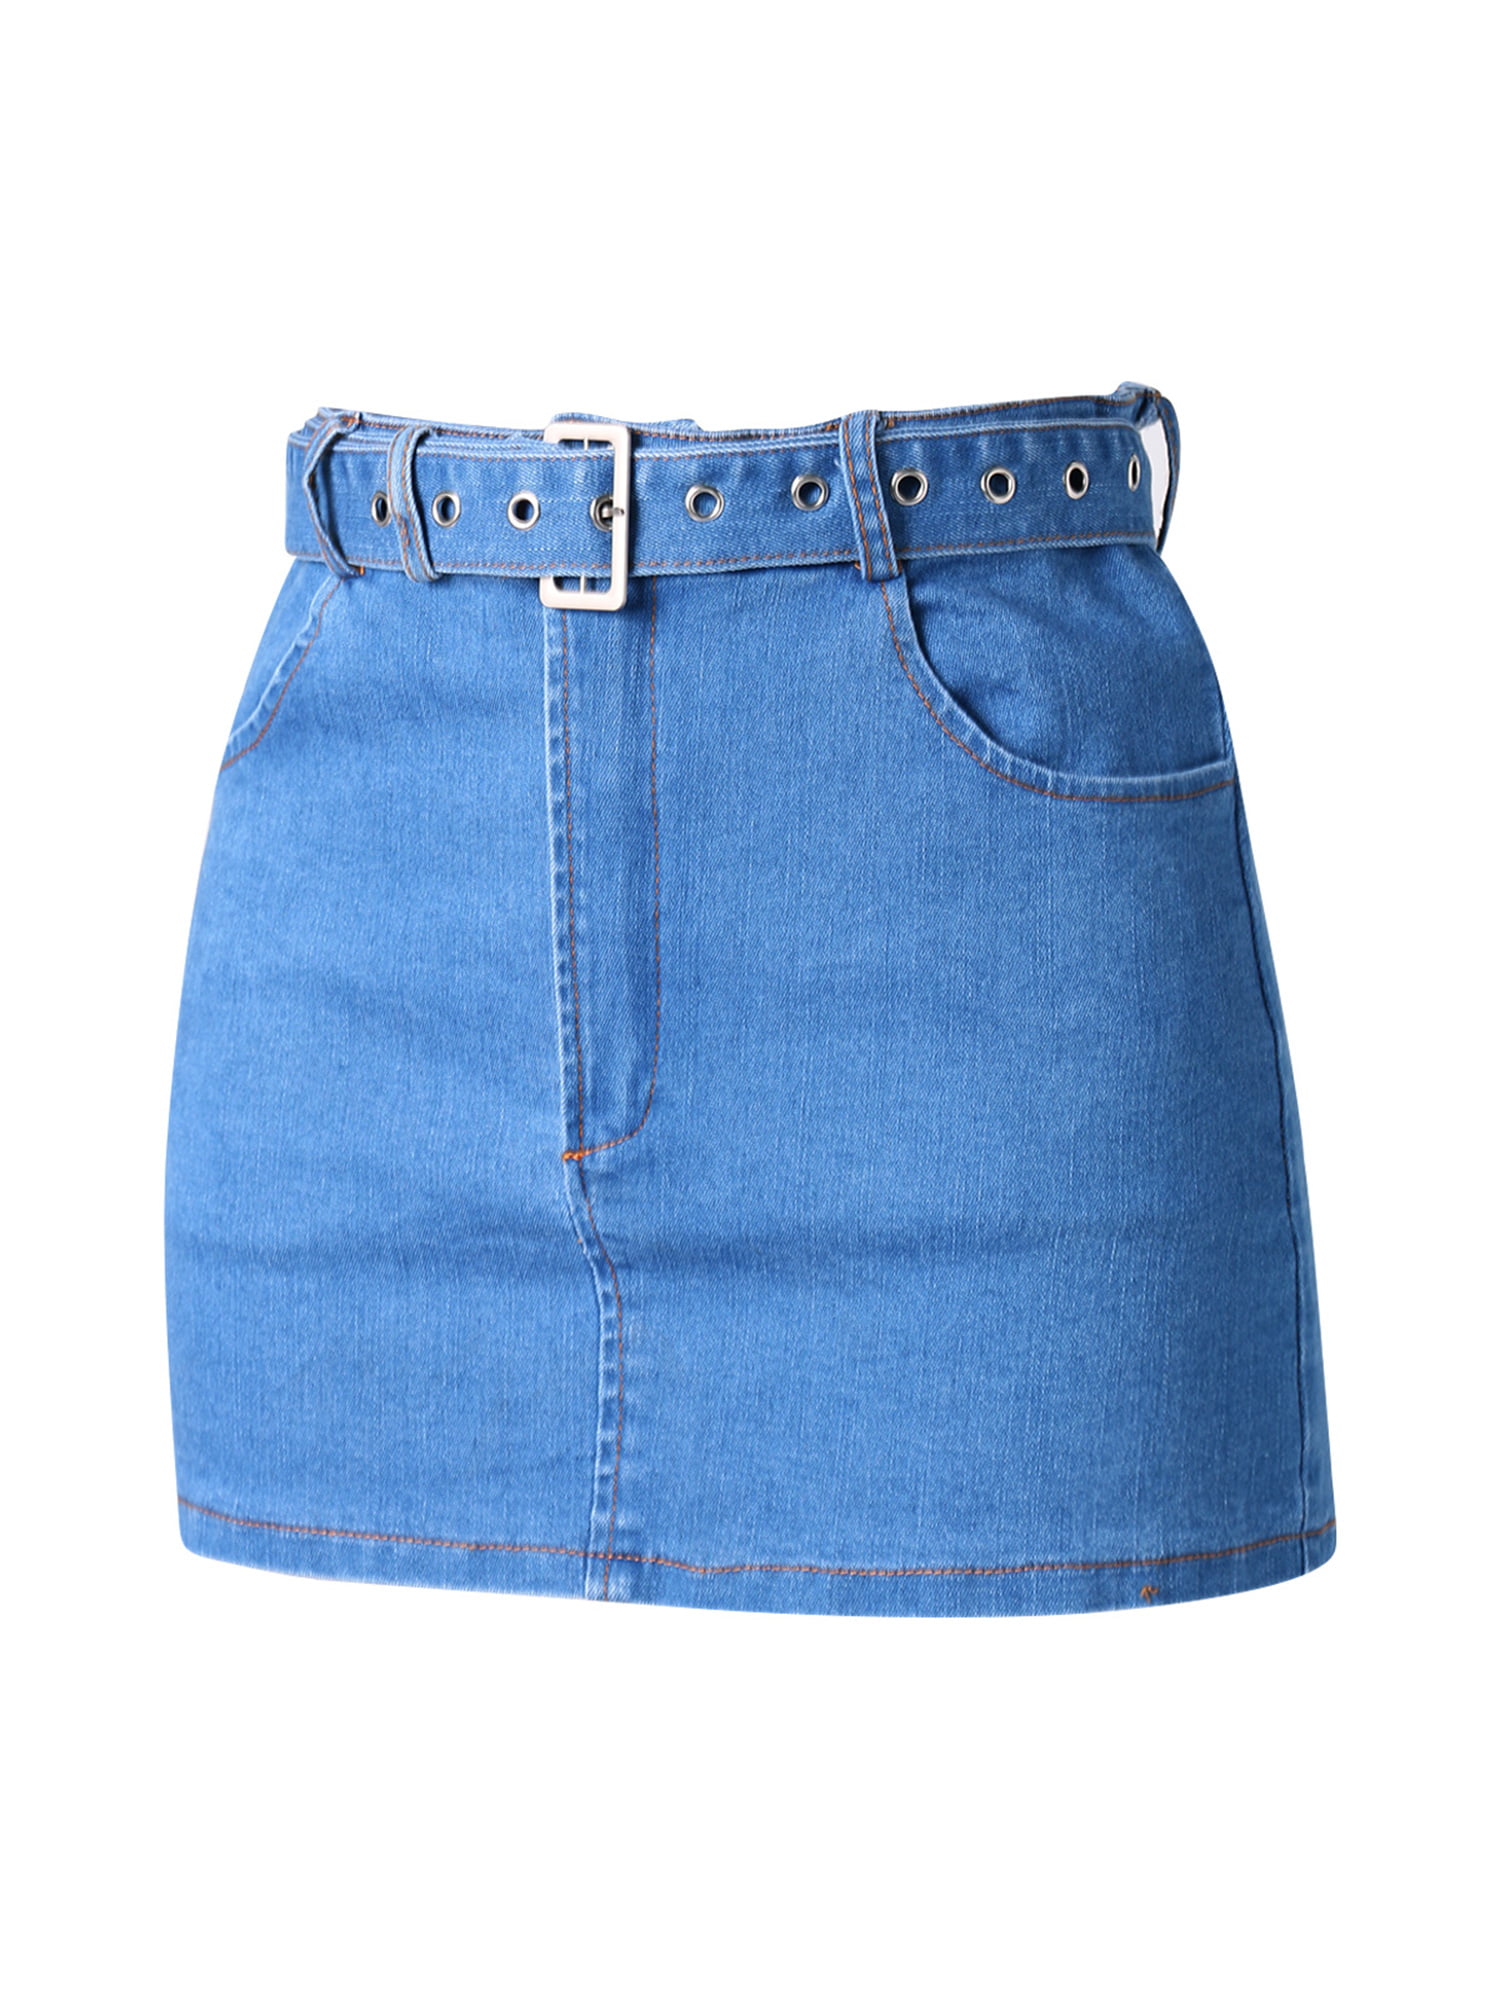 FOCUSNORM Women’s Denim Jeans Blue Zipper Corset Crop Top Sexy Push Up  Bustier Short Mini Skirt